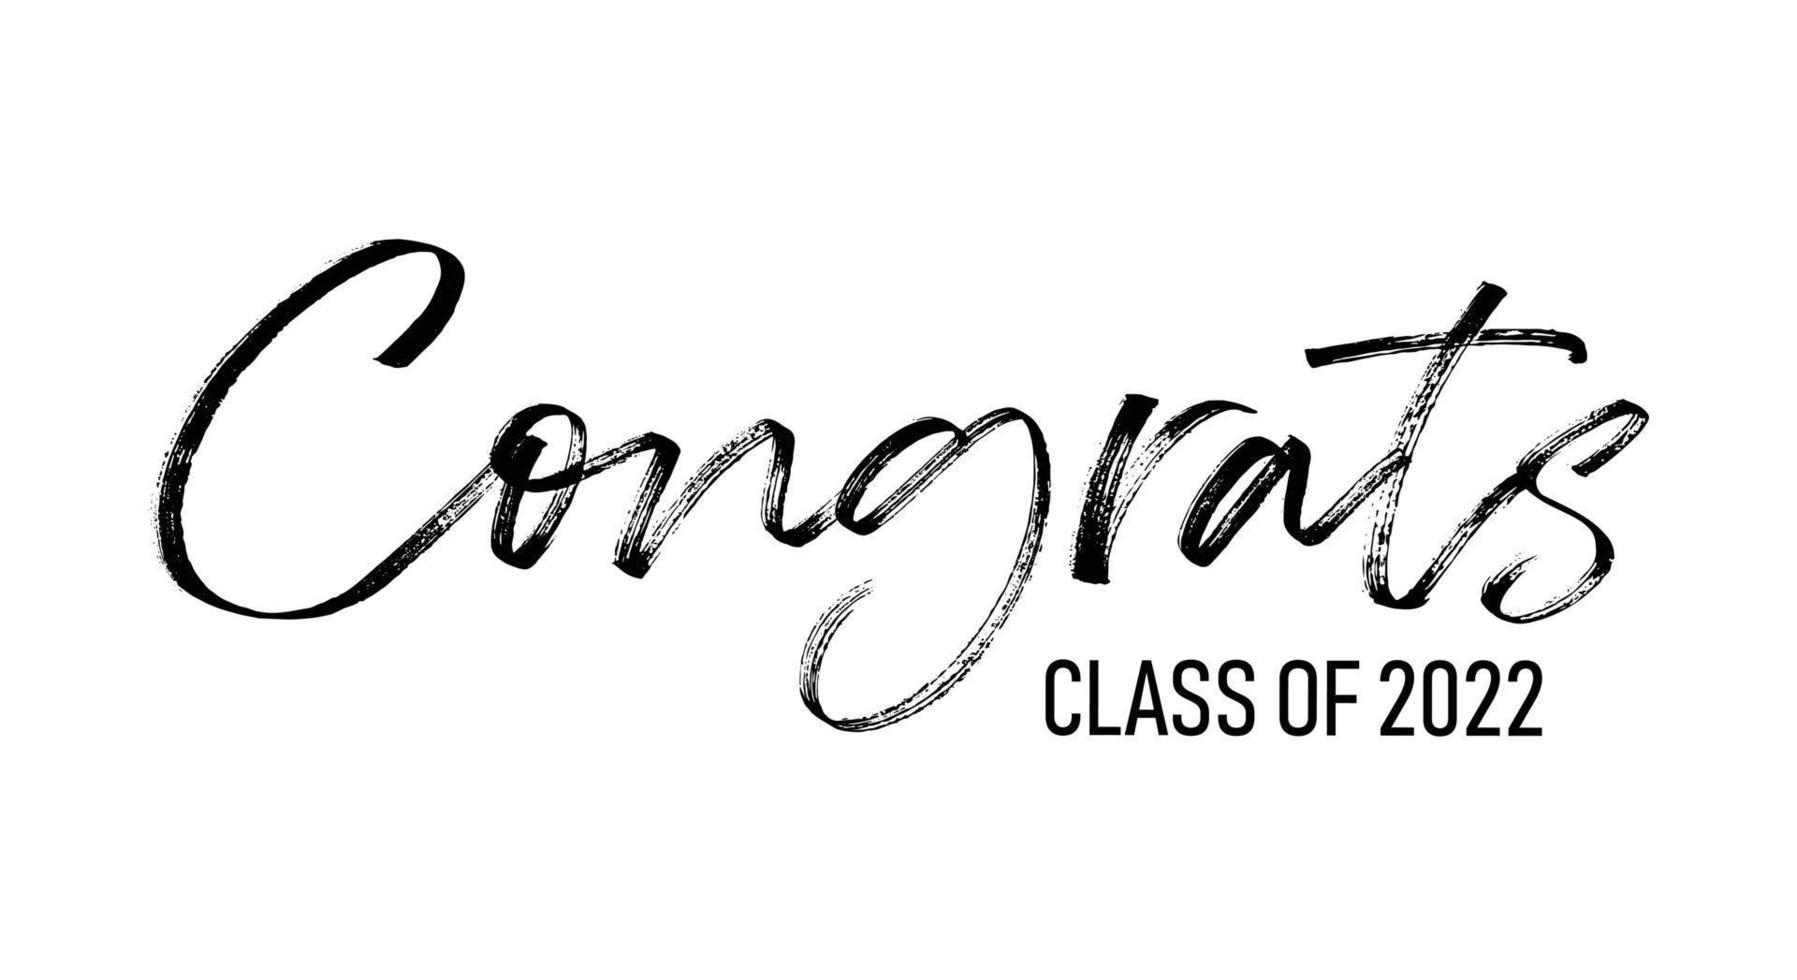 congratulazioni classe 2022 - semplice illustrazione del testo vettoriale con lettere disegnate a mano. logo di laurea modello per scuola superiore, annuario laureato.